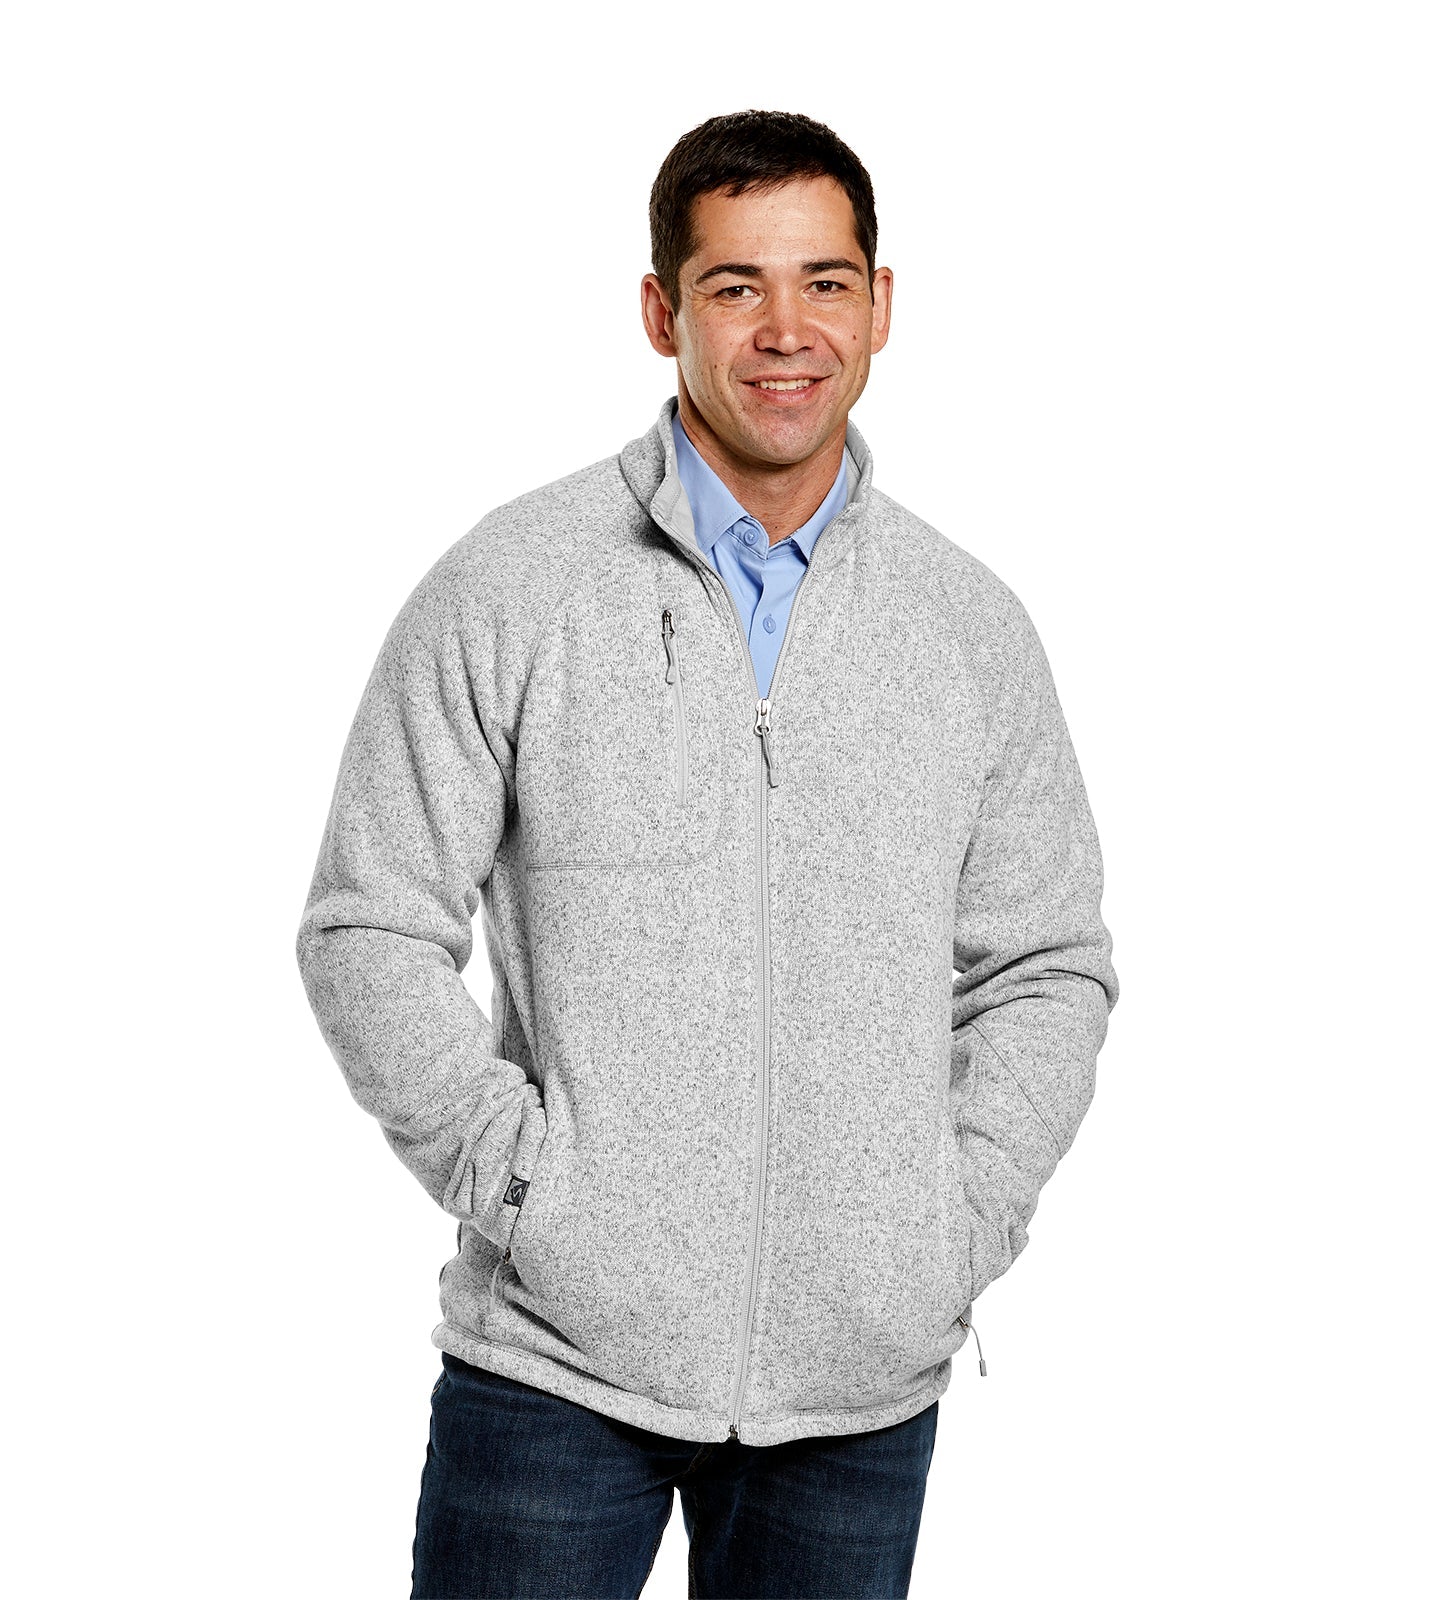 Men's Overachiever Sweaterfleece Jacket